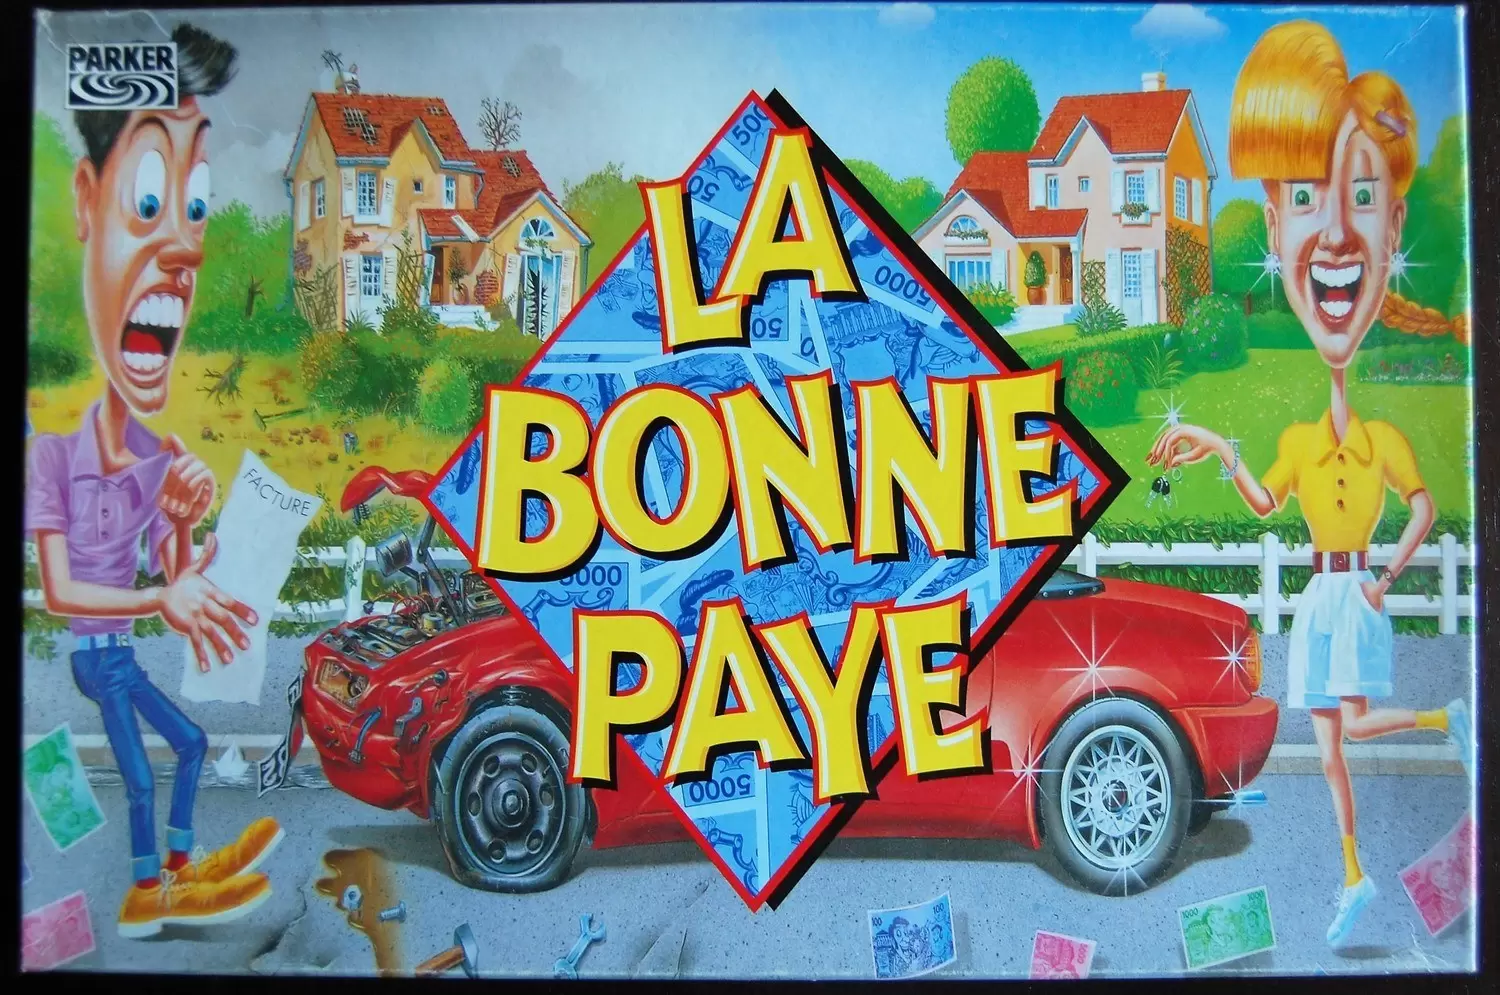 Hasbro Gaming - La Bonne Paye